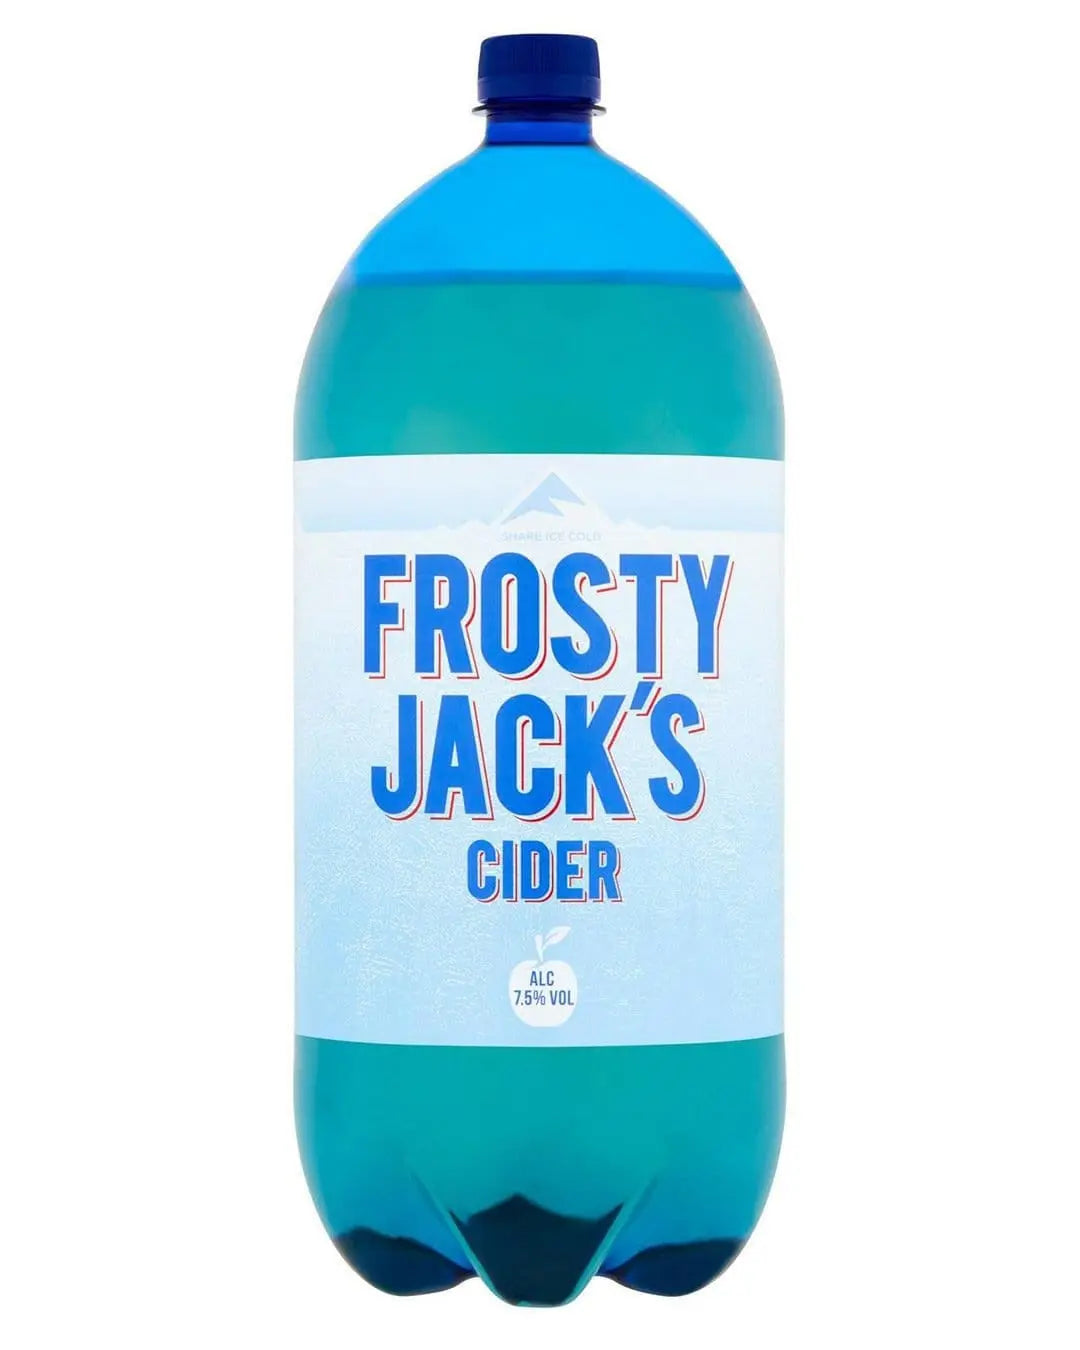 Frosty Jack's Cider Multipack, 4 x 2.5 L Cider